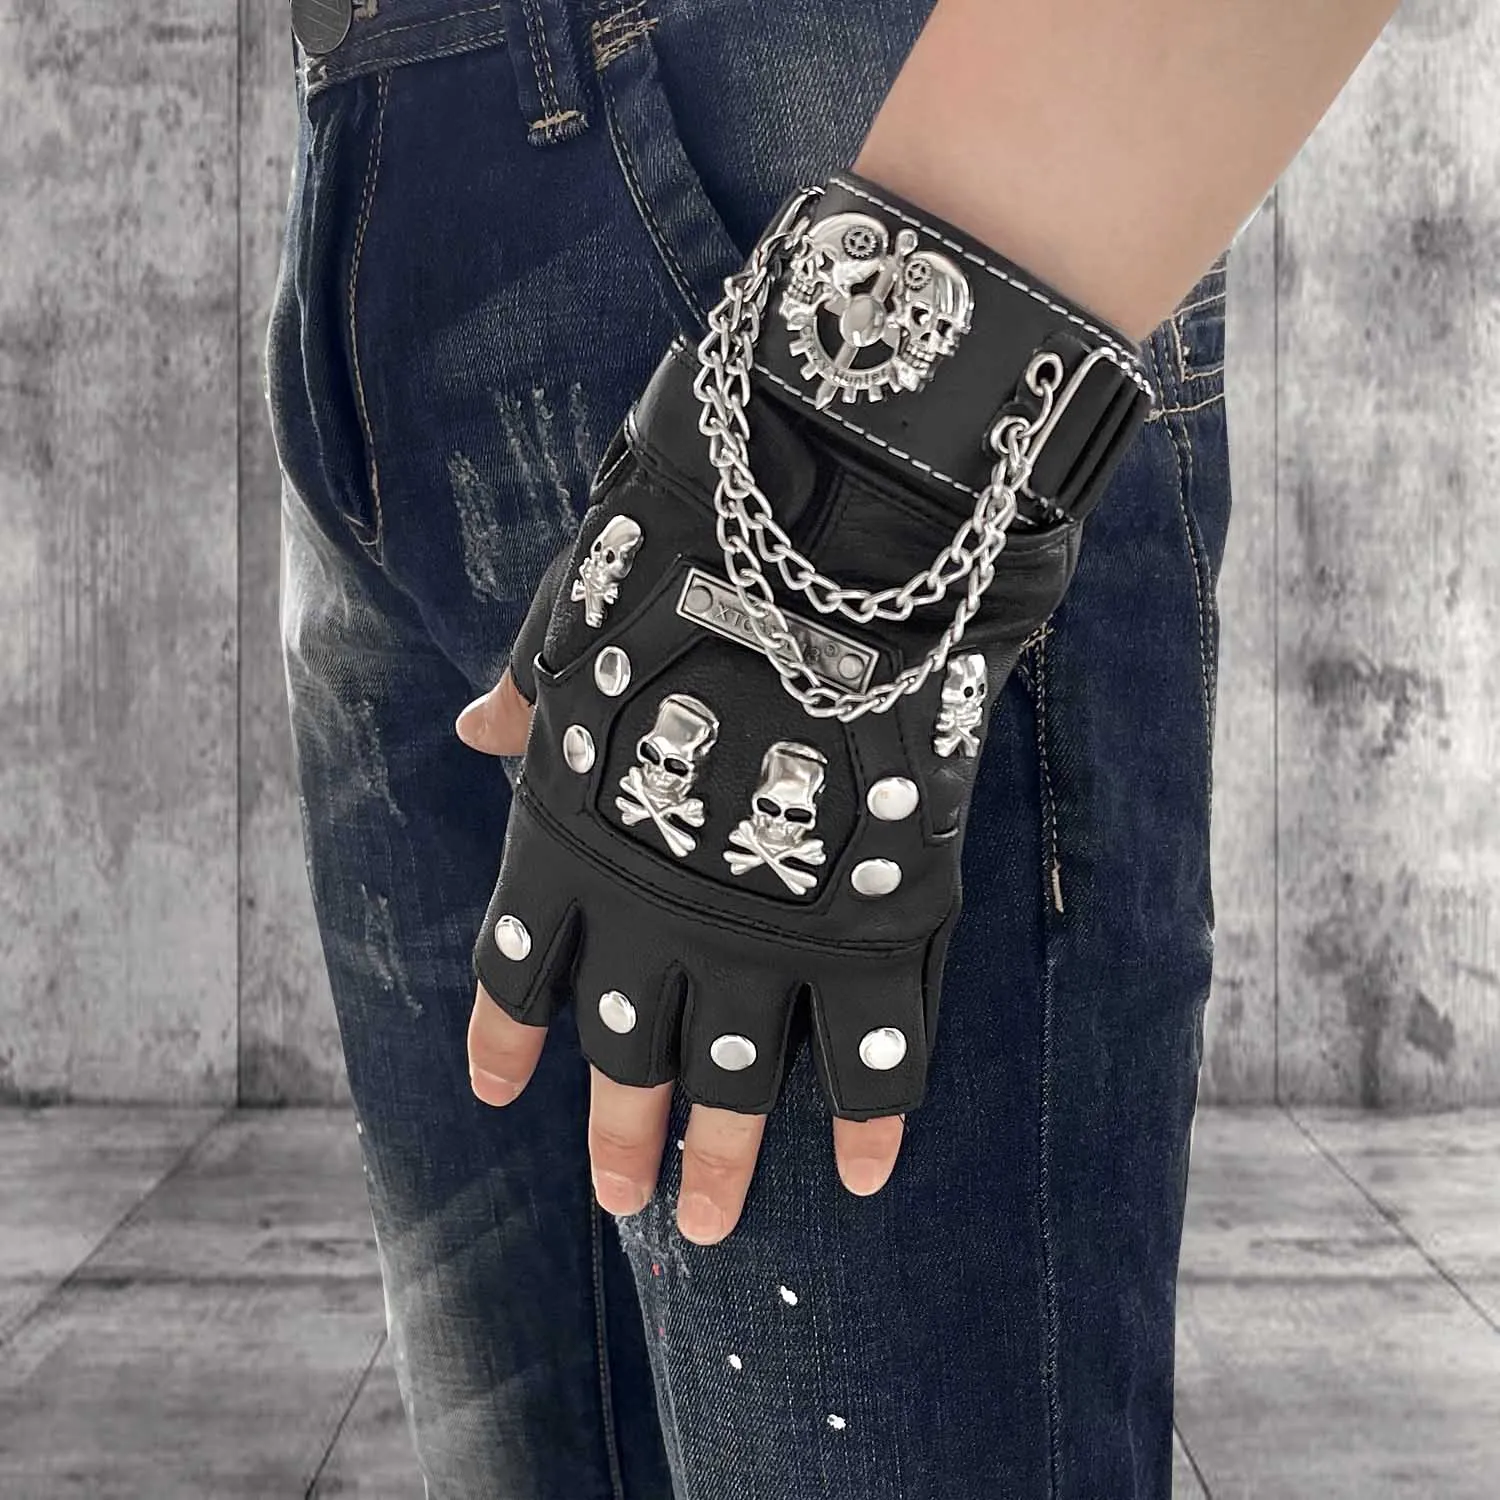 Skull Punk Rock Biker Black Leather Gloves Metal Chain Fingerless ...